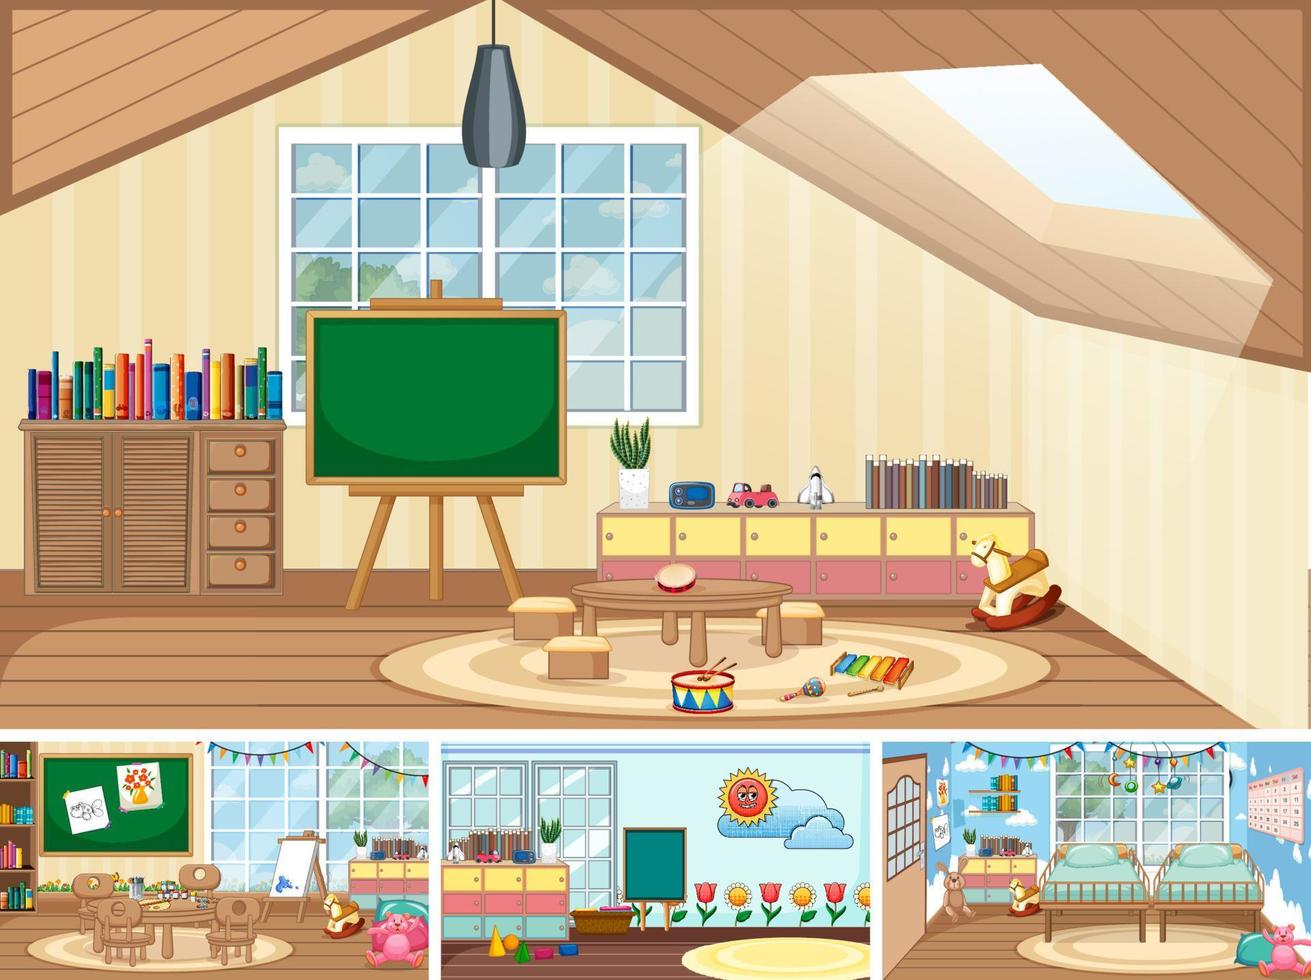 conjunto de diferentes cenas de sala de aula do jardim de infância vetor